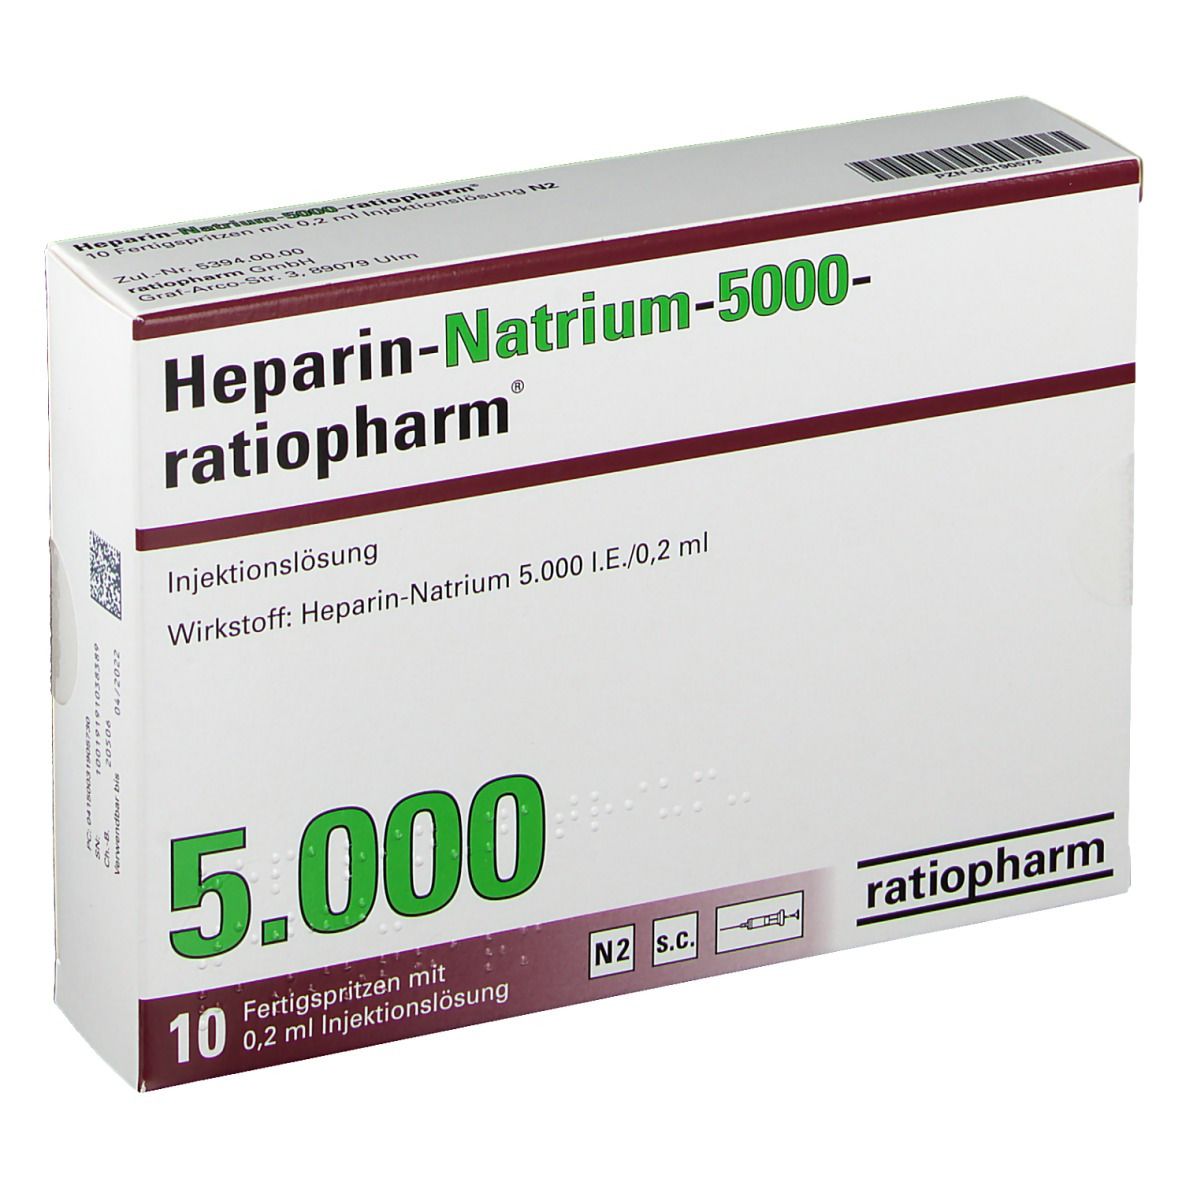 Heparin-Natrium-5000-ratiopharm®